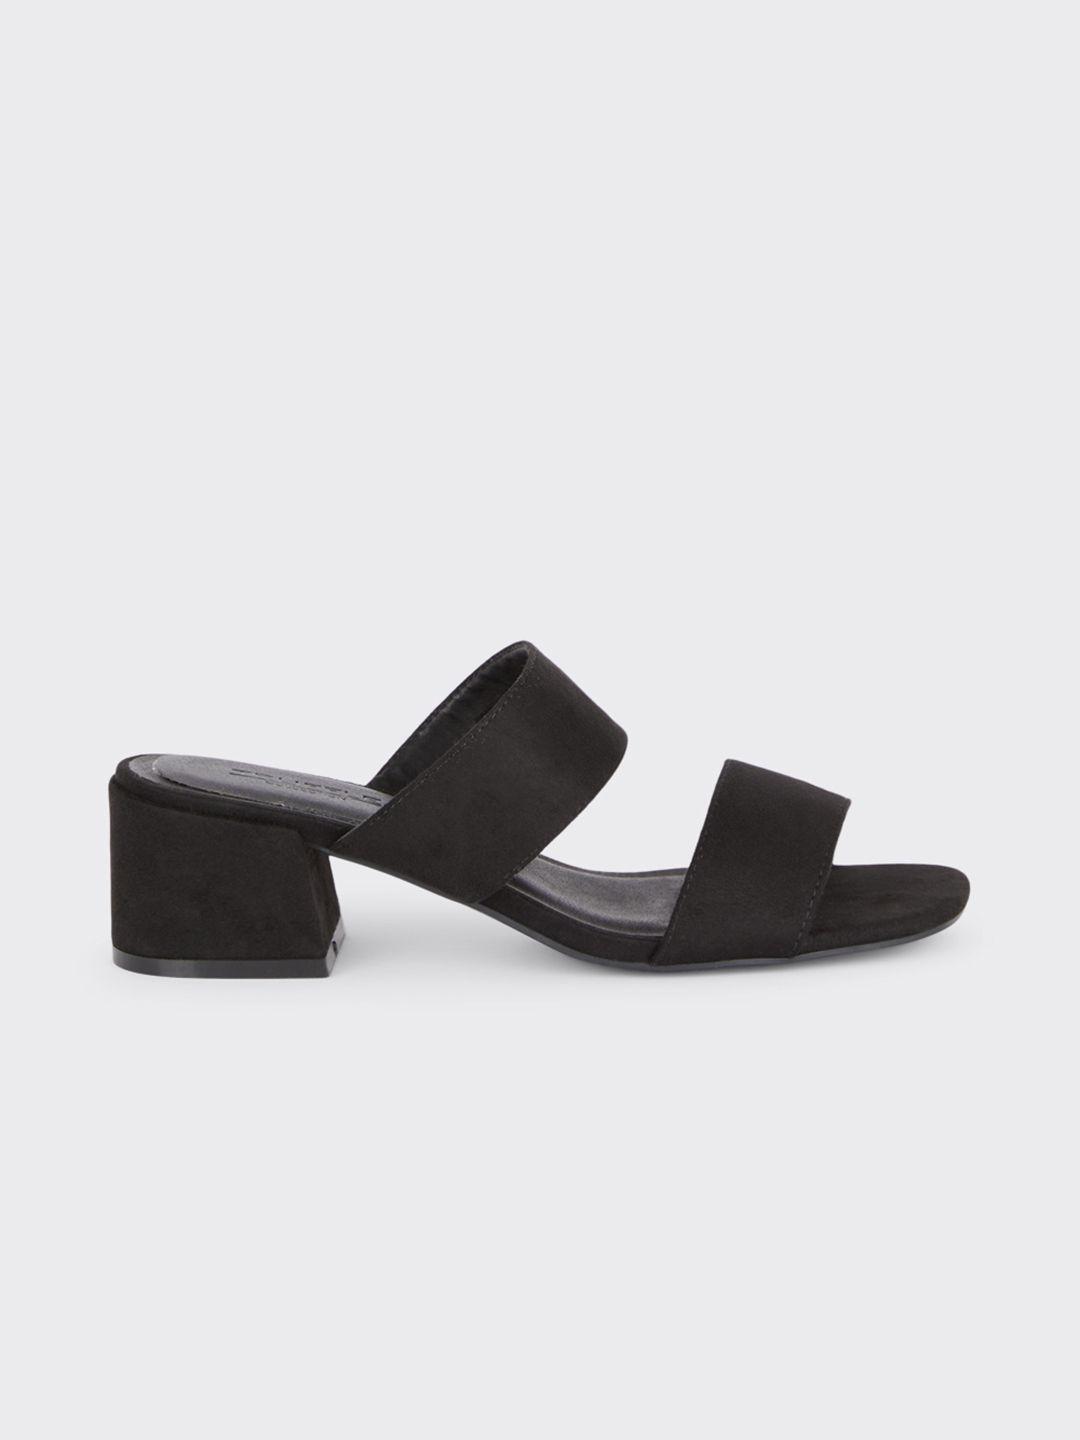 dorothy perkins block heel sandals